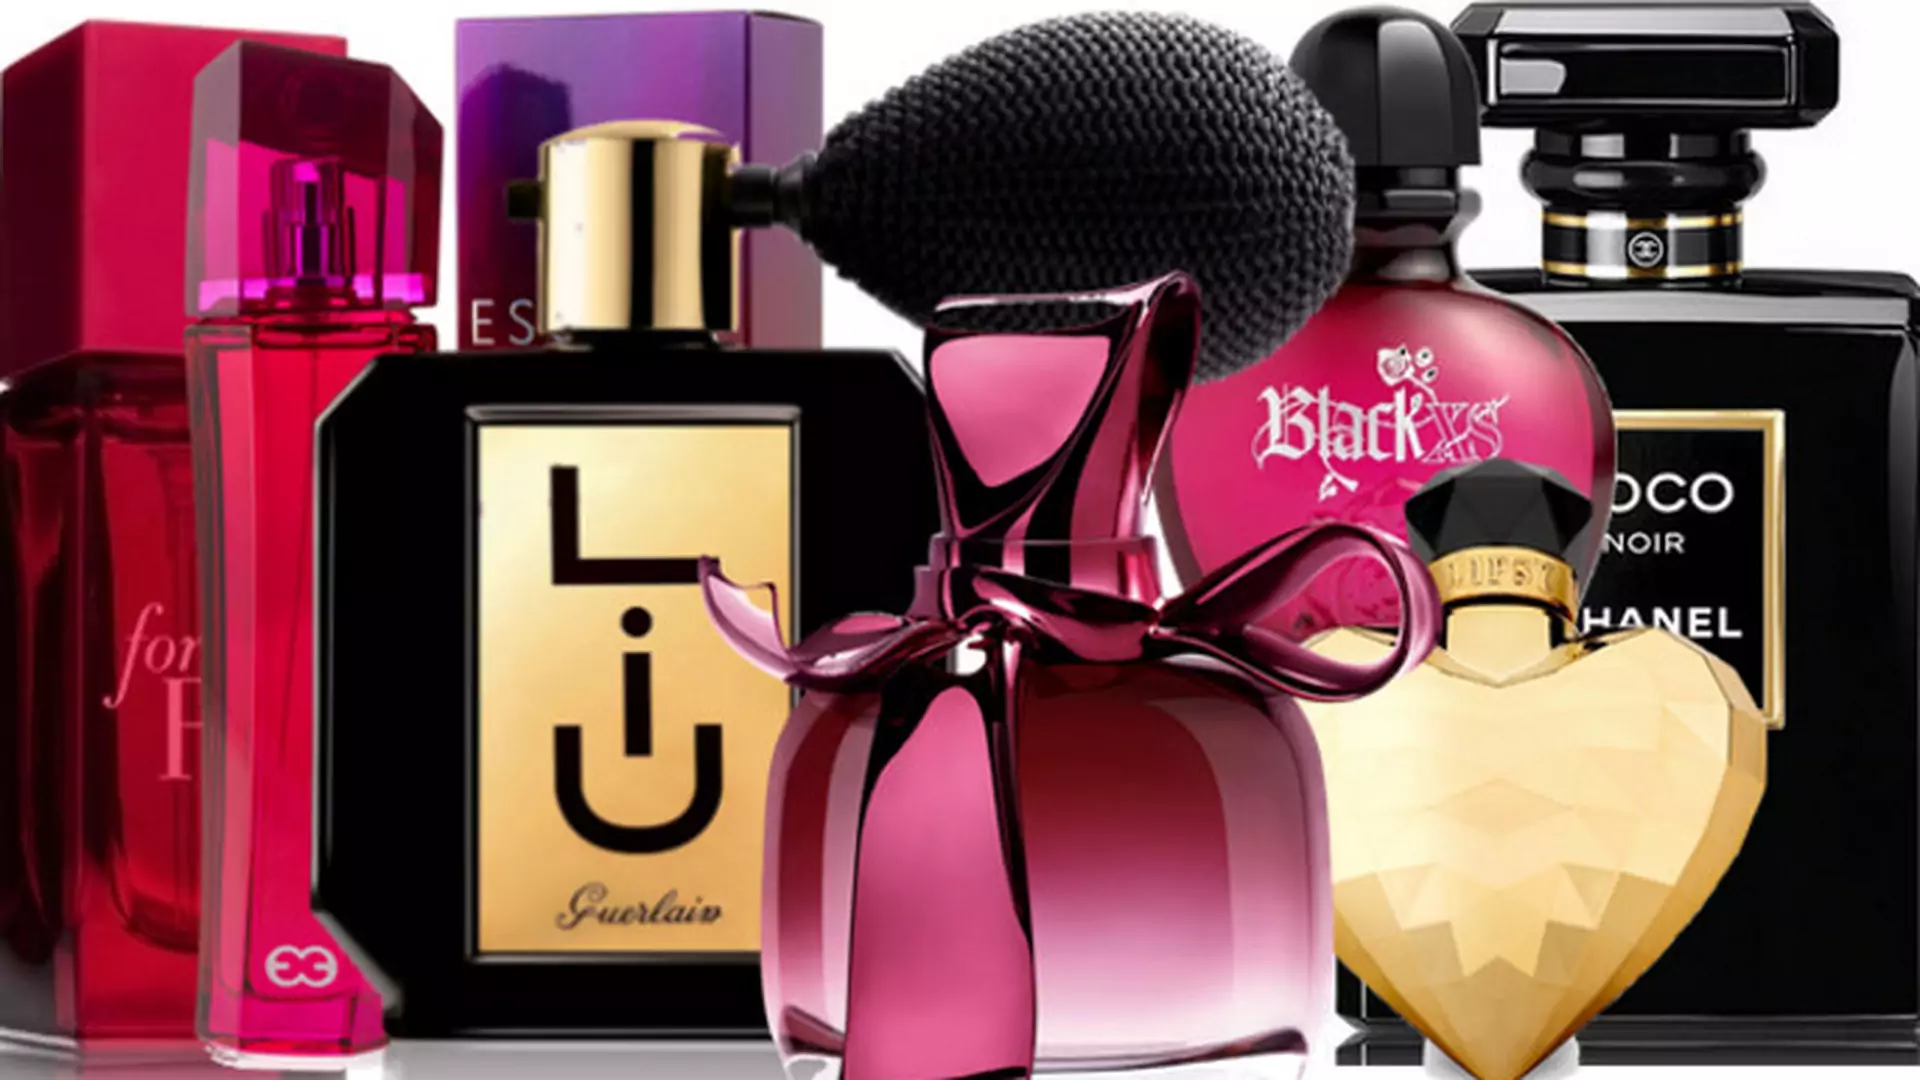 Dobieramy idealne prezenty: jak wybrać perfumy dla bliskich?